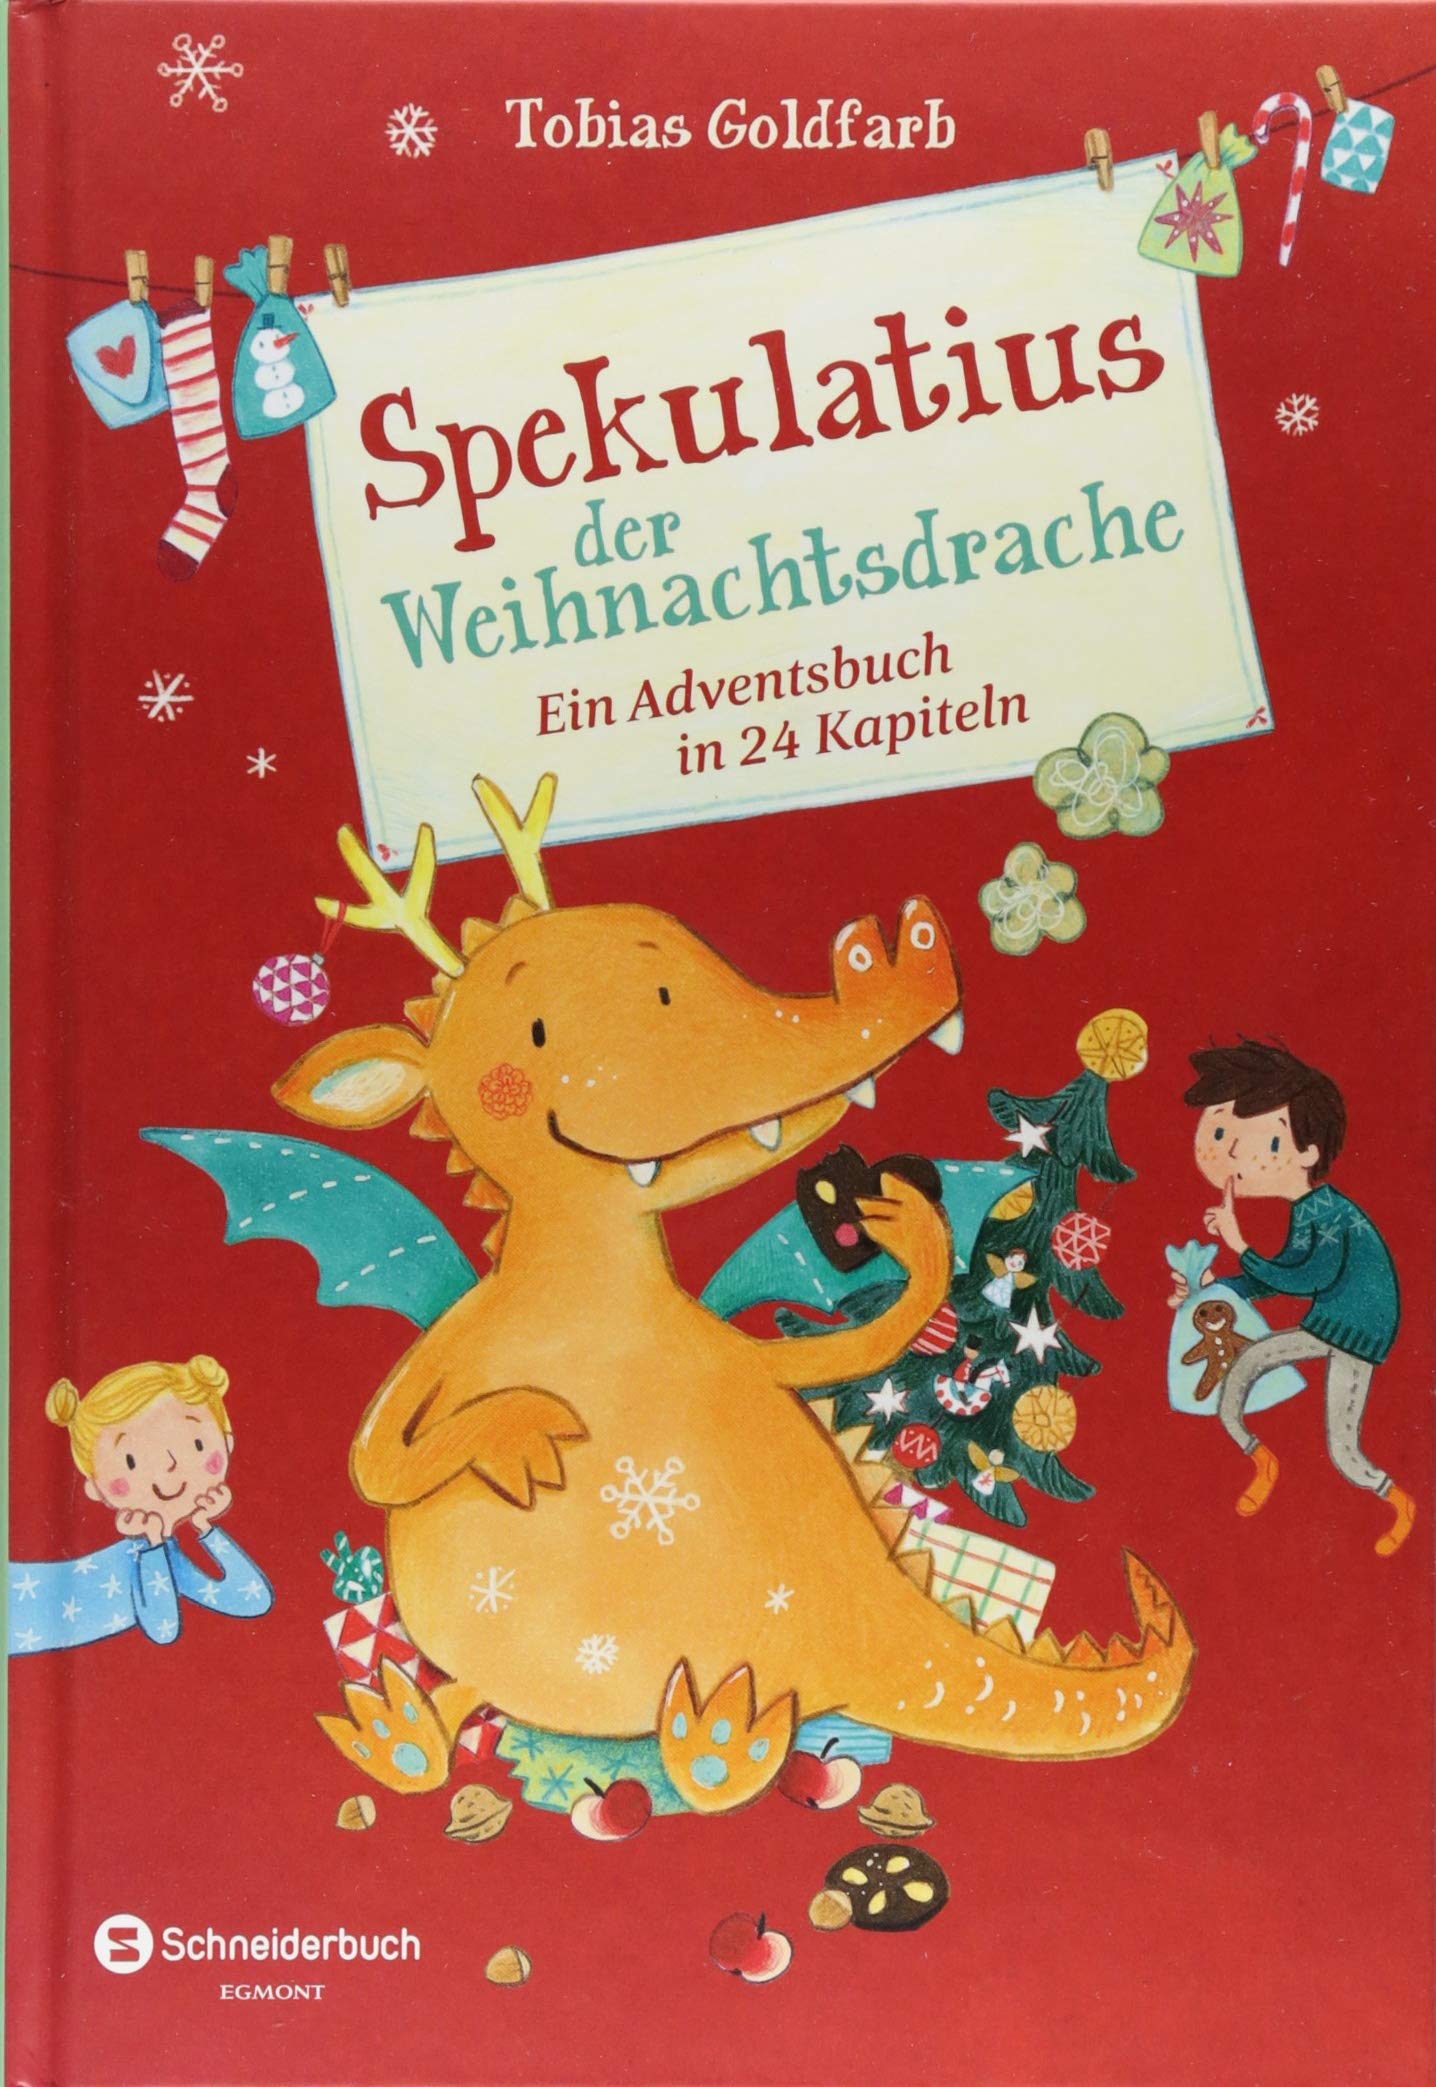 You are currently viewing Spekulatius der Weihnachtsdrache